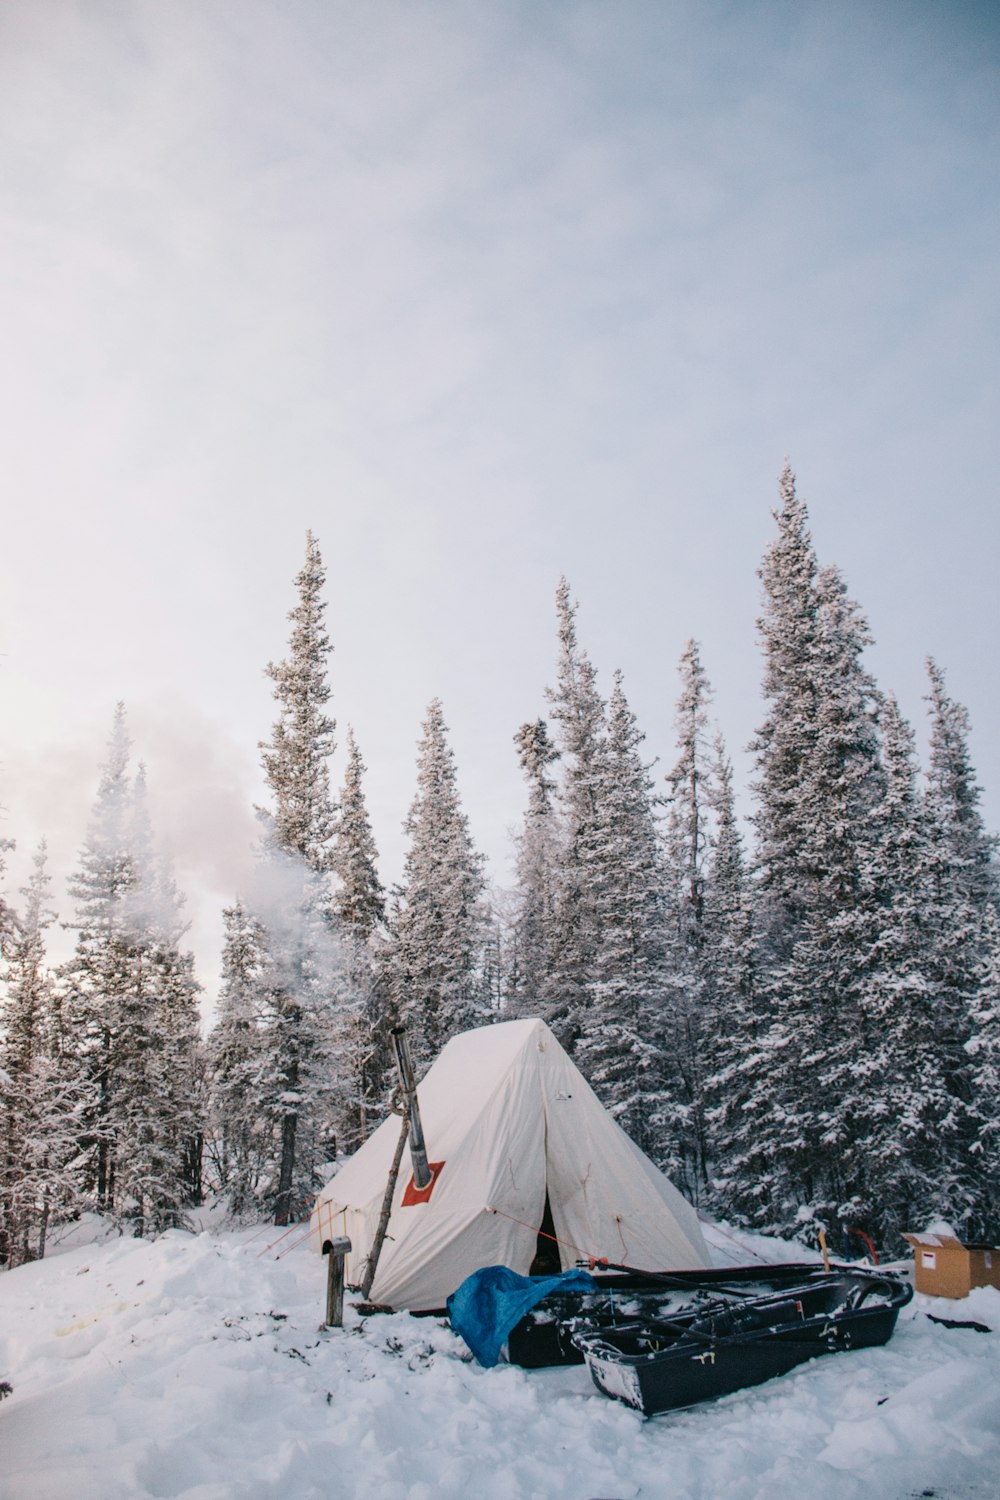 tenda branca ao lado de pinheiros cobertos de neve